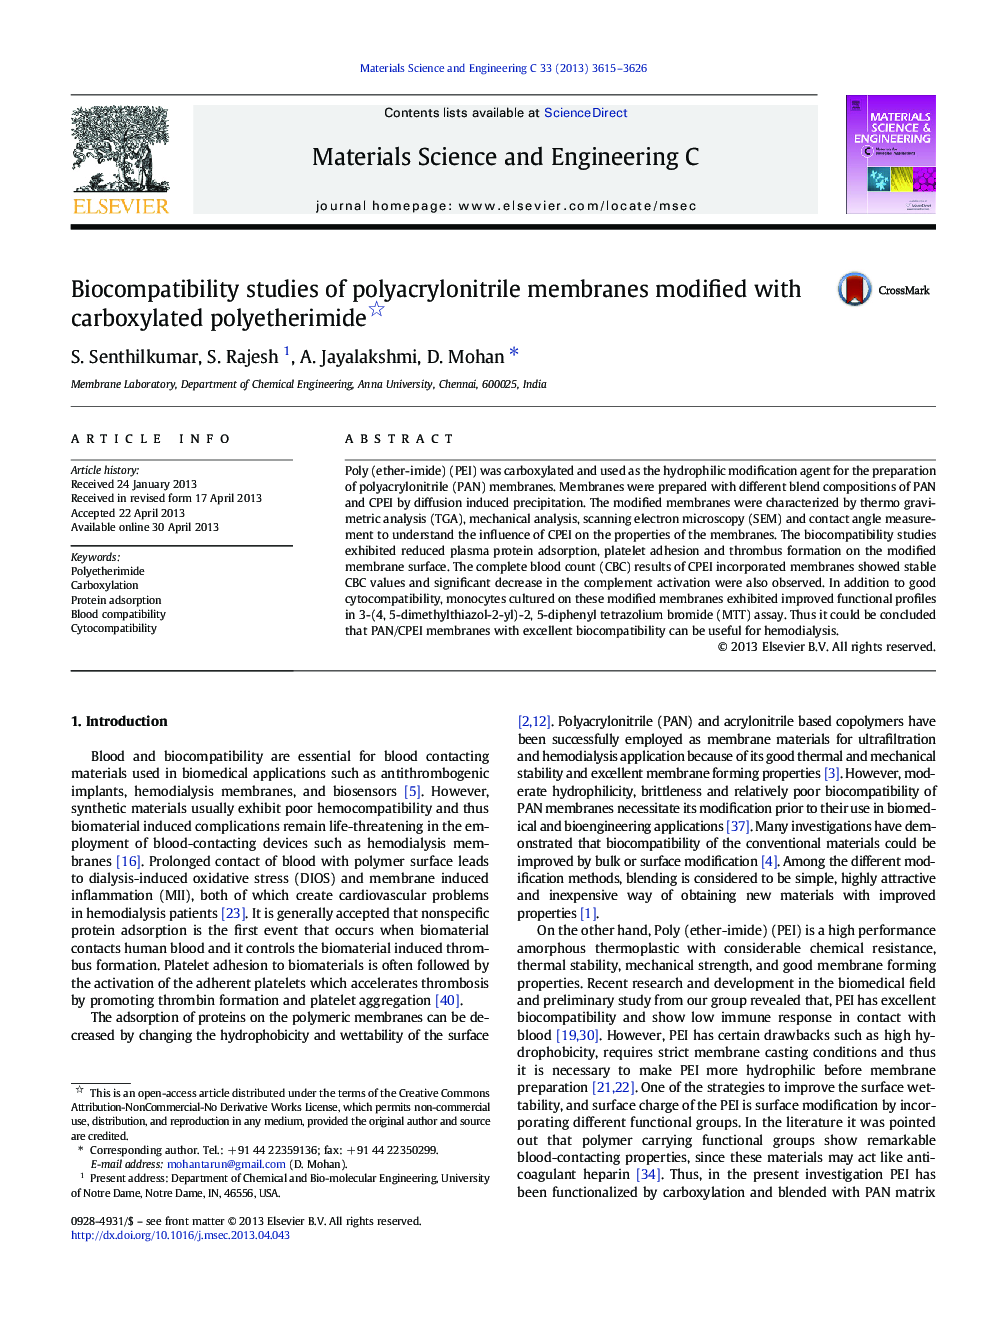 مطالعات بیوسویوپلاستی از غشاهای پلی آکریلونیتریل اصلاح شده با پلی اتریمید کربوکسیل شده است 